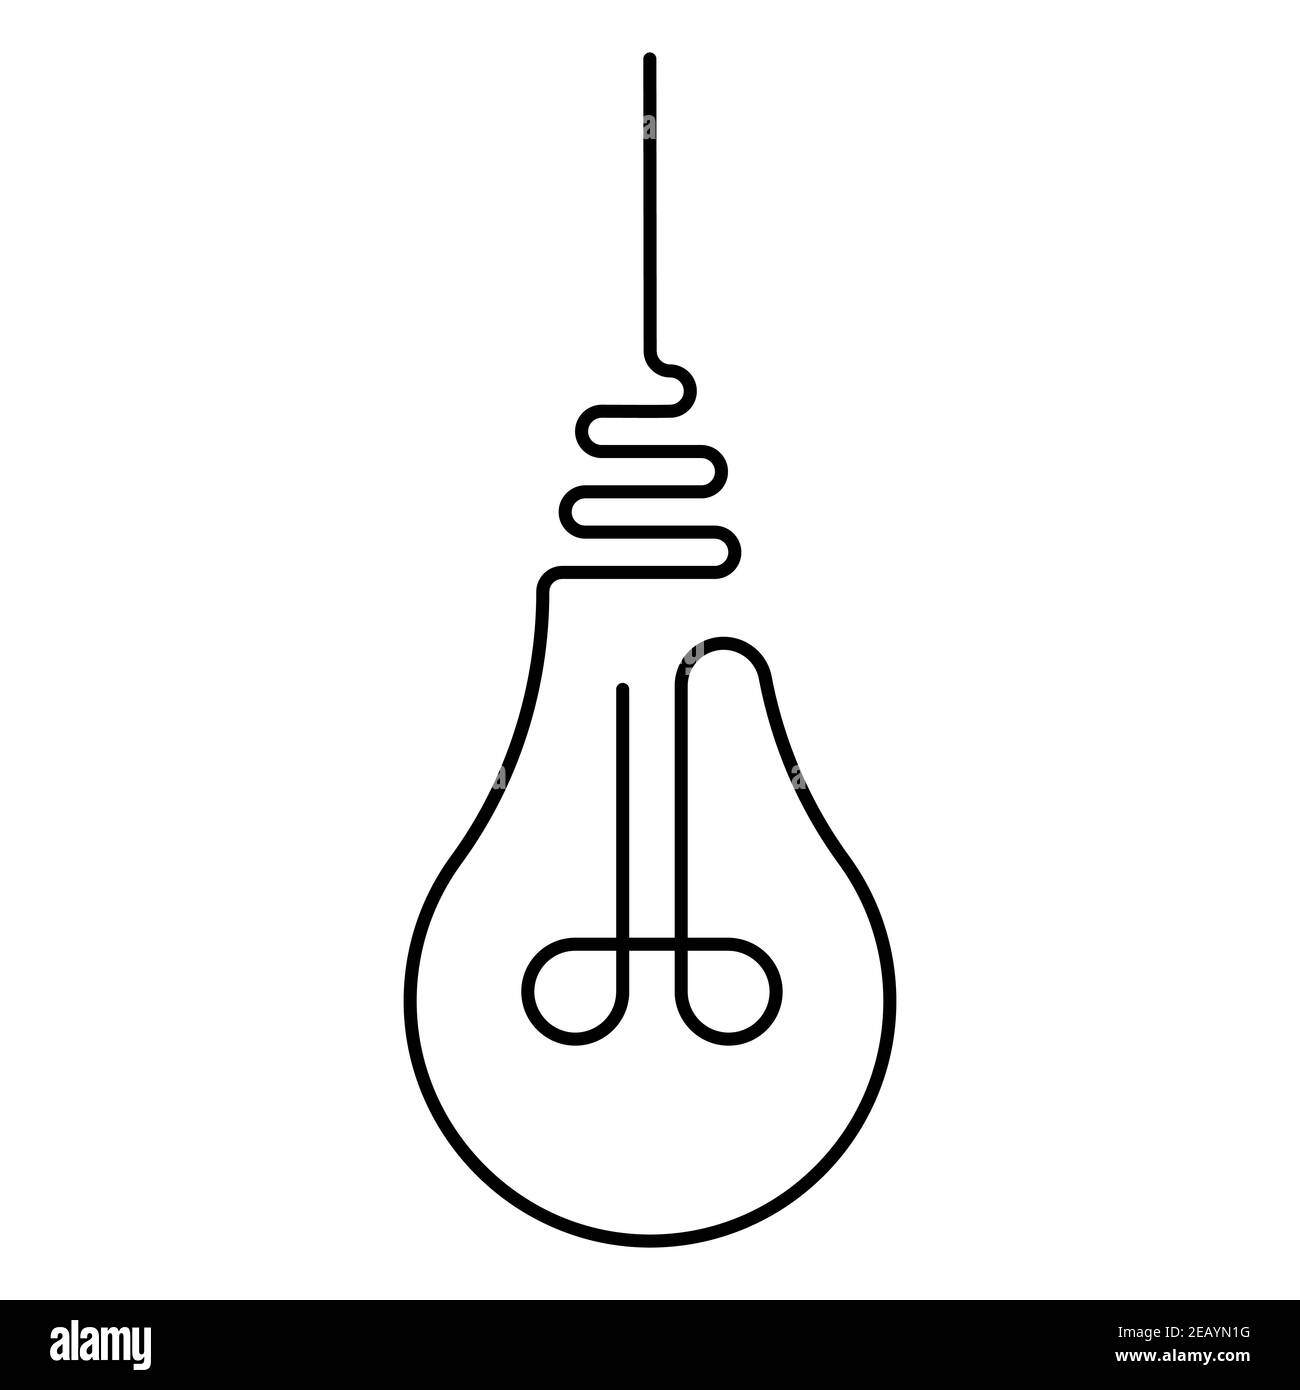 Hängende Glühbirne ist mit einer Linie gezeichnet, der Vektor-Glühbirne mit einer Linie ist ein Symbol Licht Wärme und frische Ideen Stock Vektor